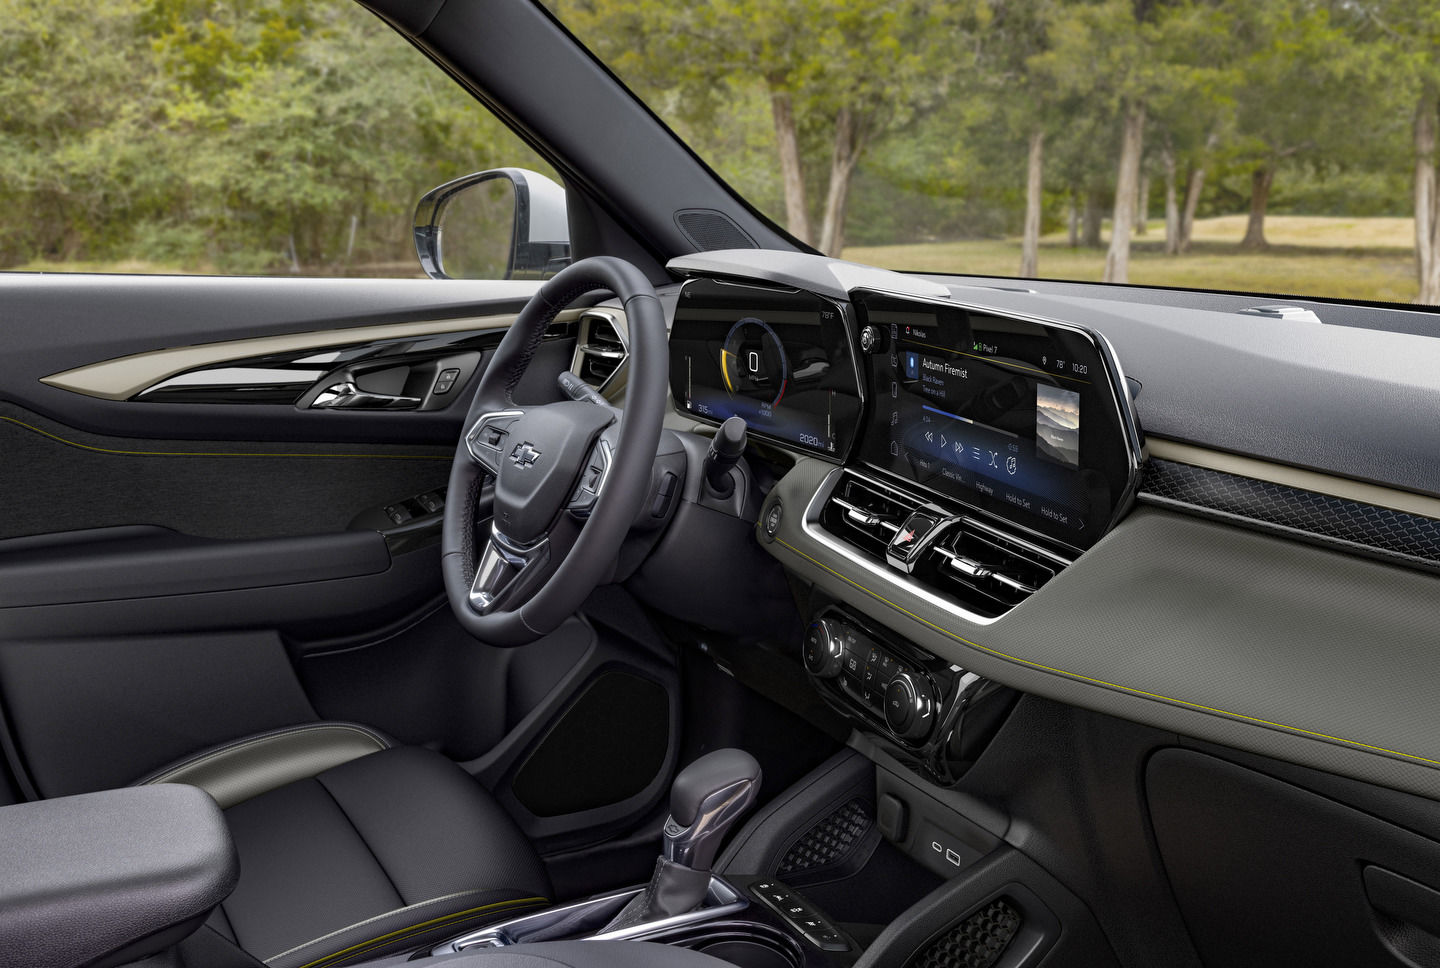 L'avenir, c'est maintenant : Un regard sur les technologies développées par Google dans les voitures Chevrolet